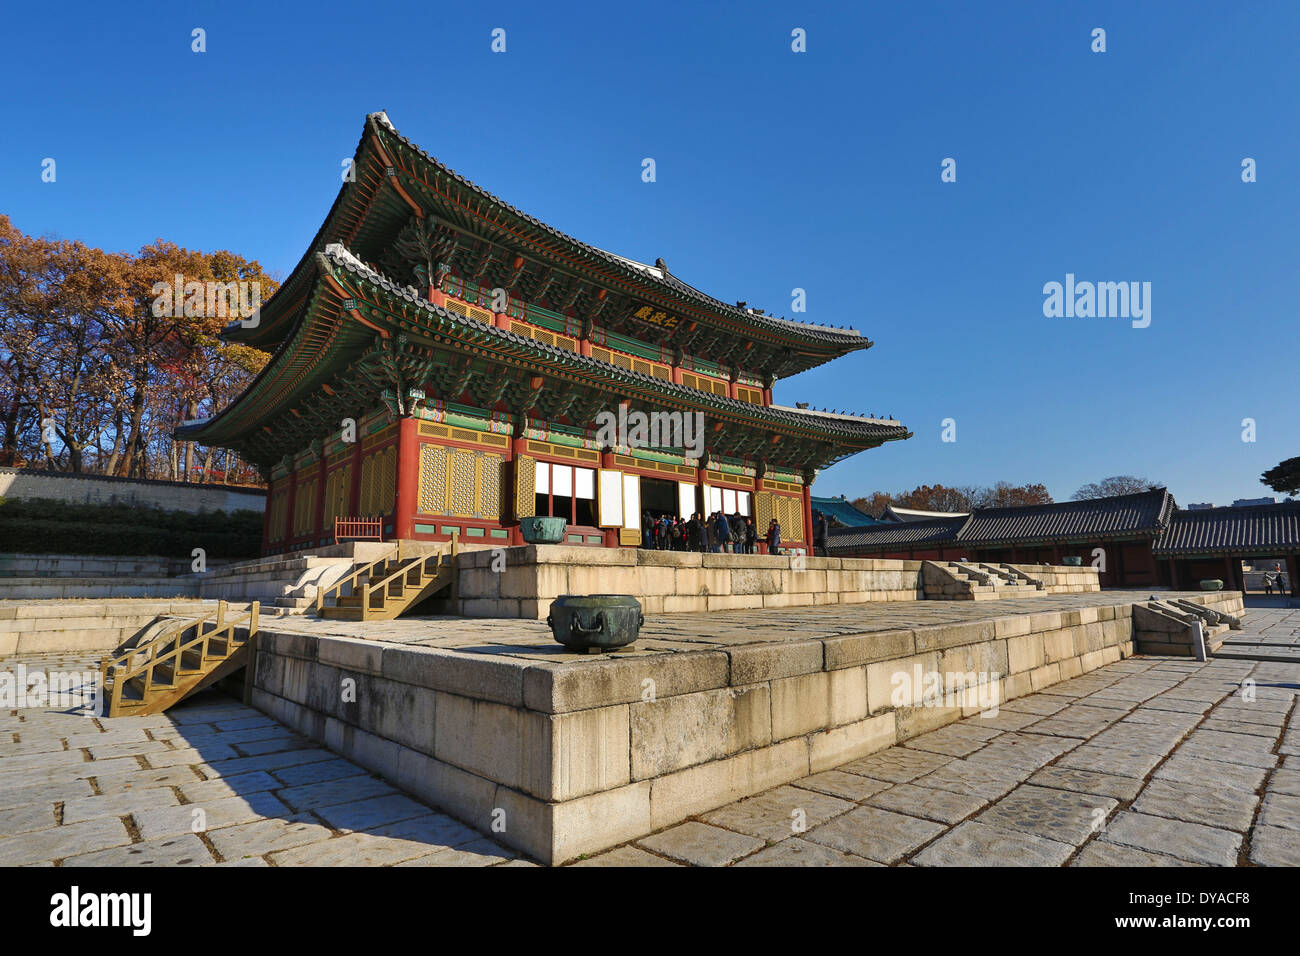 Patrimonio de la humanidad, Gyeongbokgung, Corea, en Asia, en Seúl, arquitectura, historia, palacio, turística, los viajes, la unesco Foto de stock